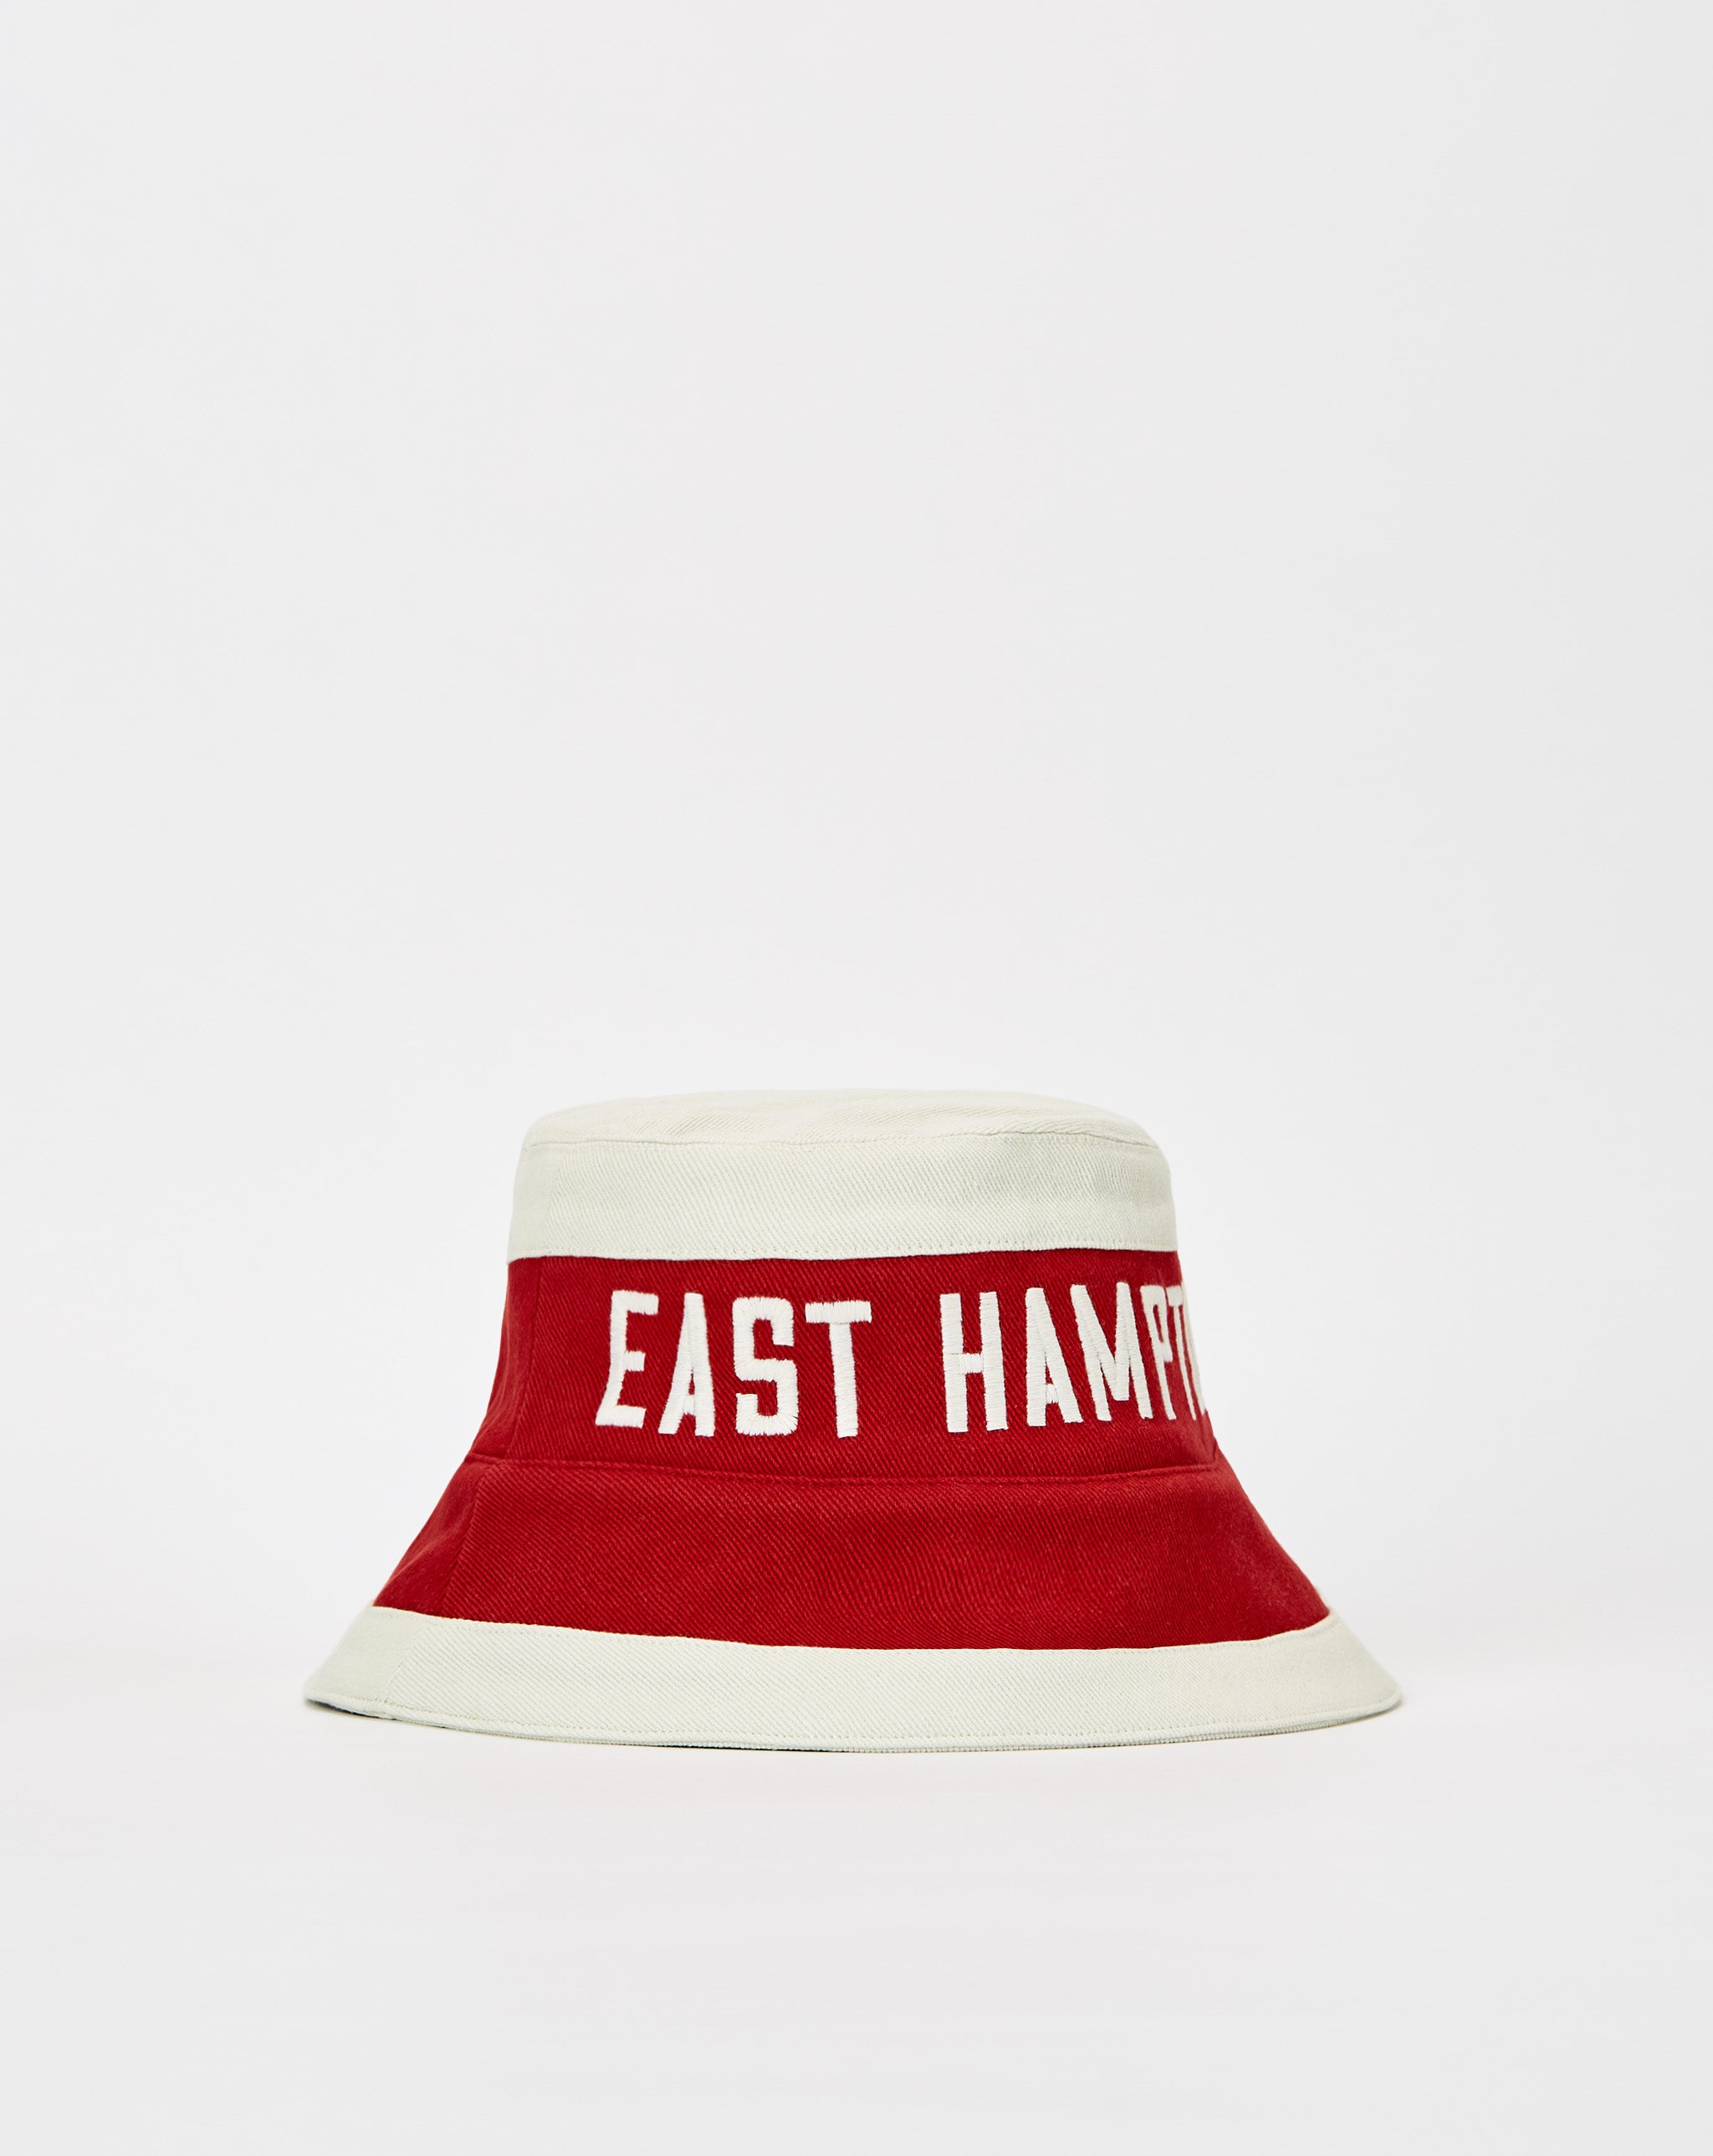 Rhude Rhude East Hampton Bucket Hat  - Cheap Cerbe Jordan outlet